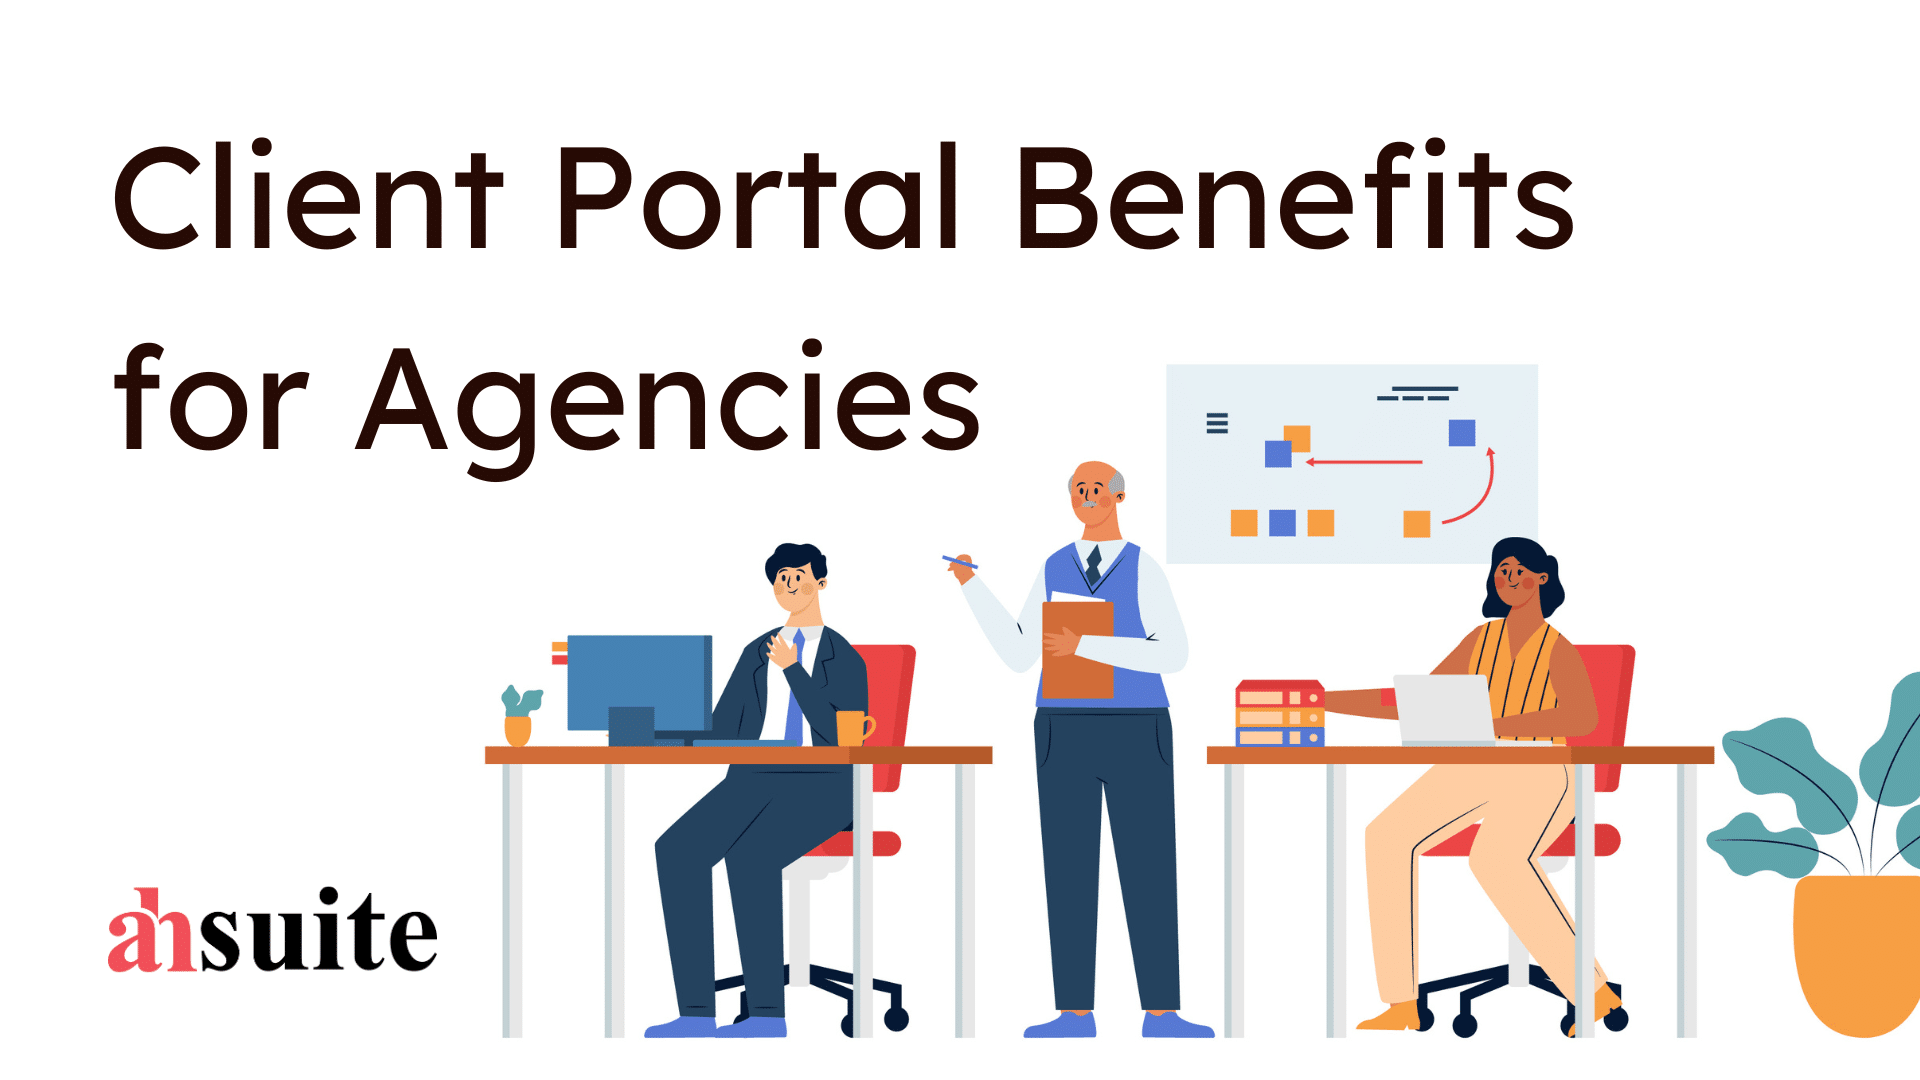 Client Portal Benefits for Agencies